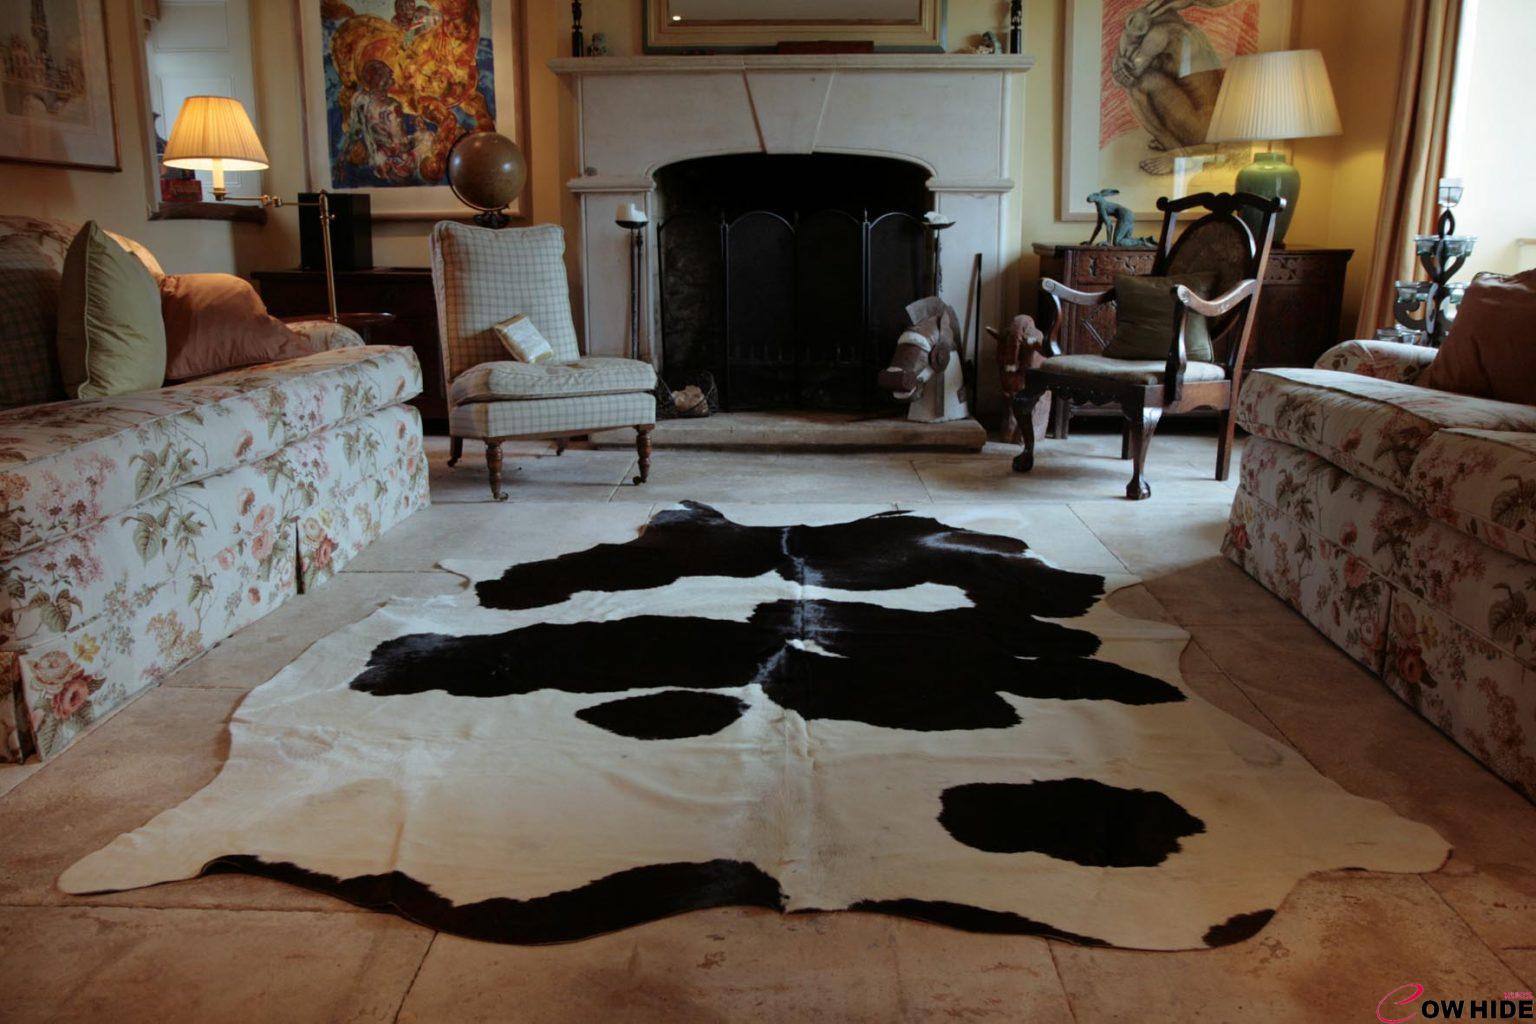 Buy Best Real cowhide rugs offer a rustic aesthetic, DKFON